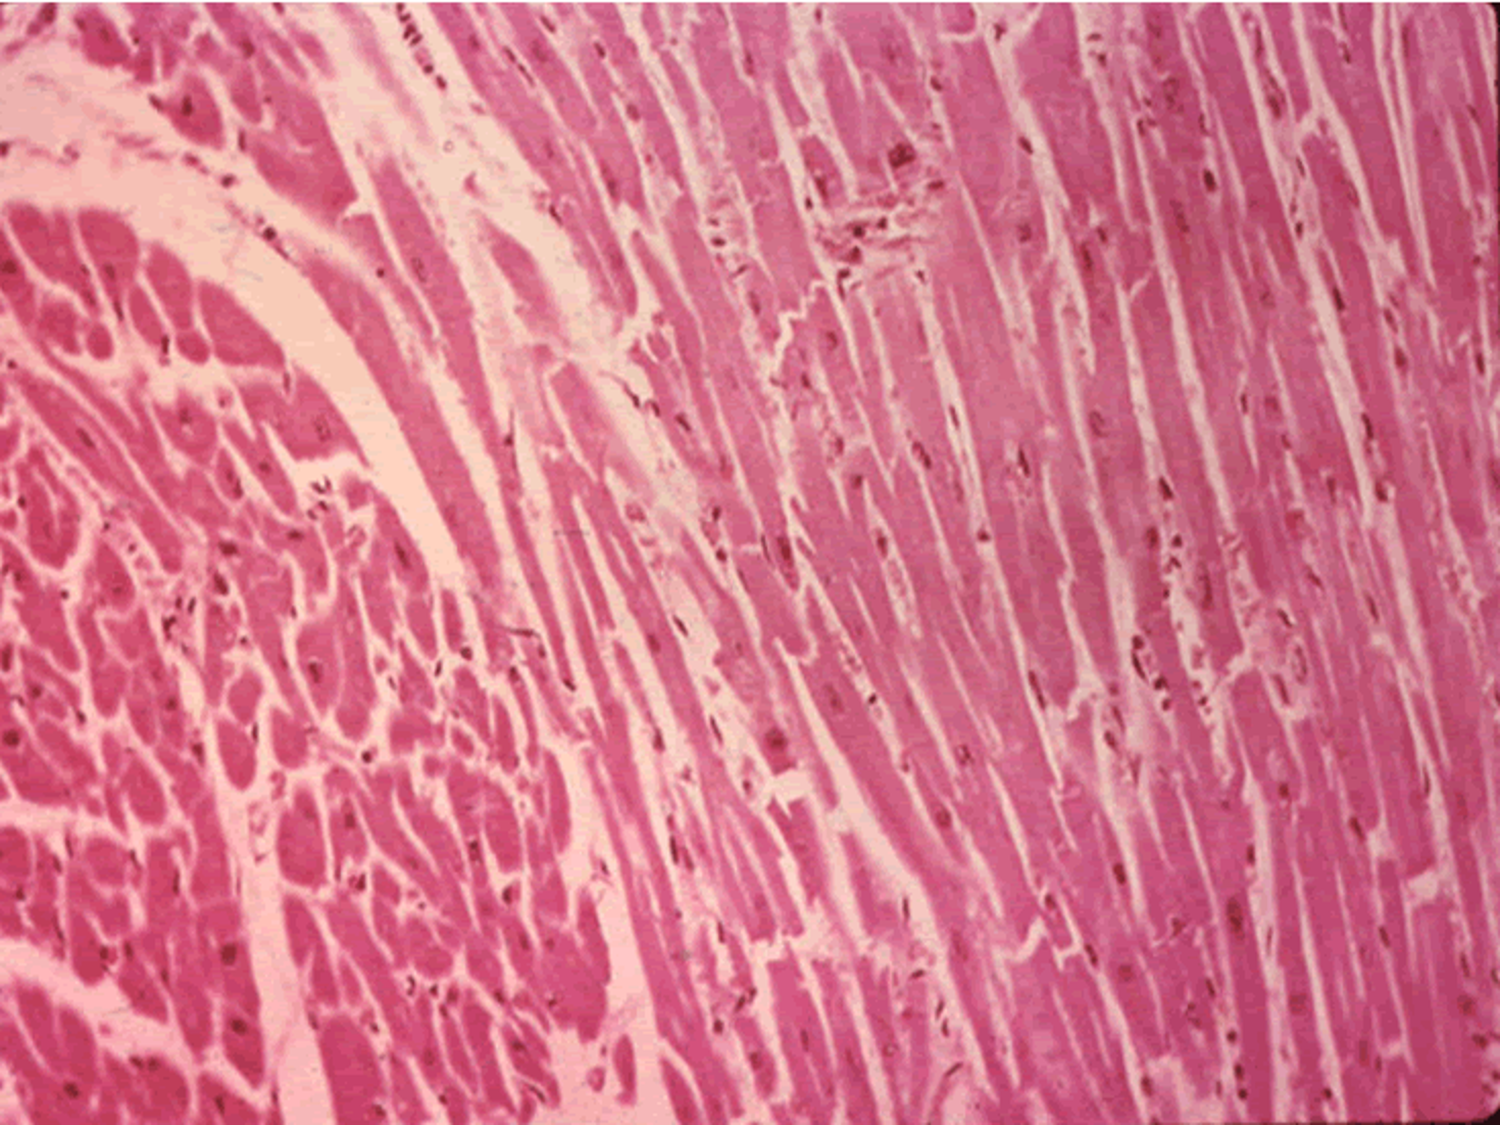 Клетка сердечной поперечно полосатой мышечной ткани